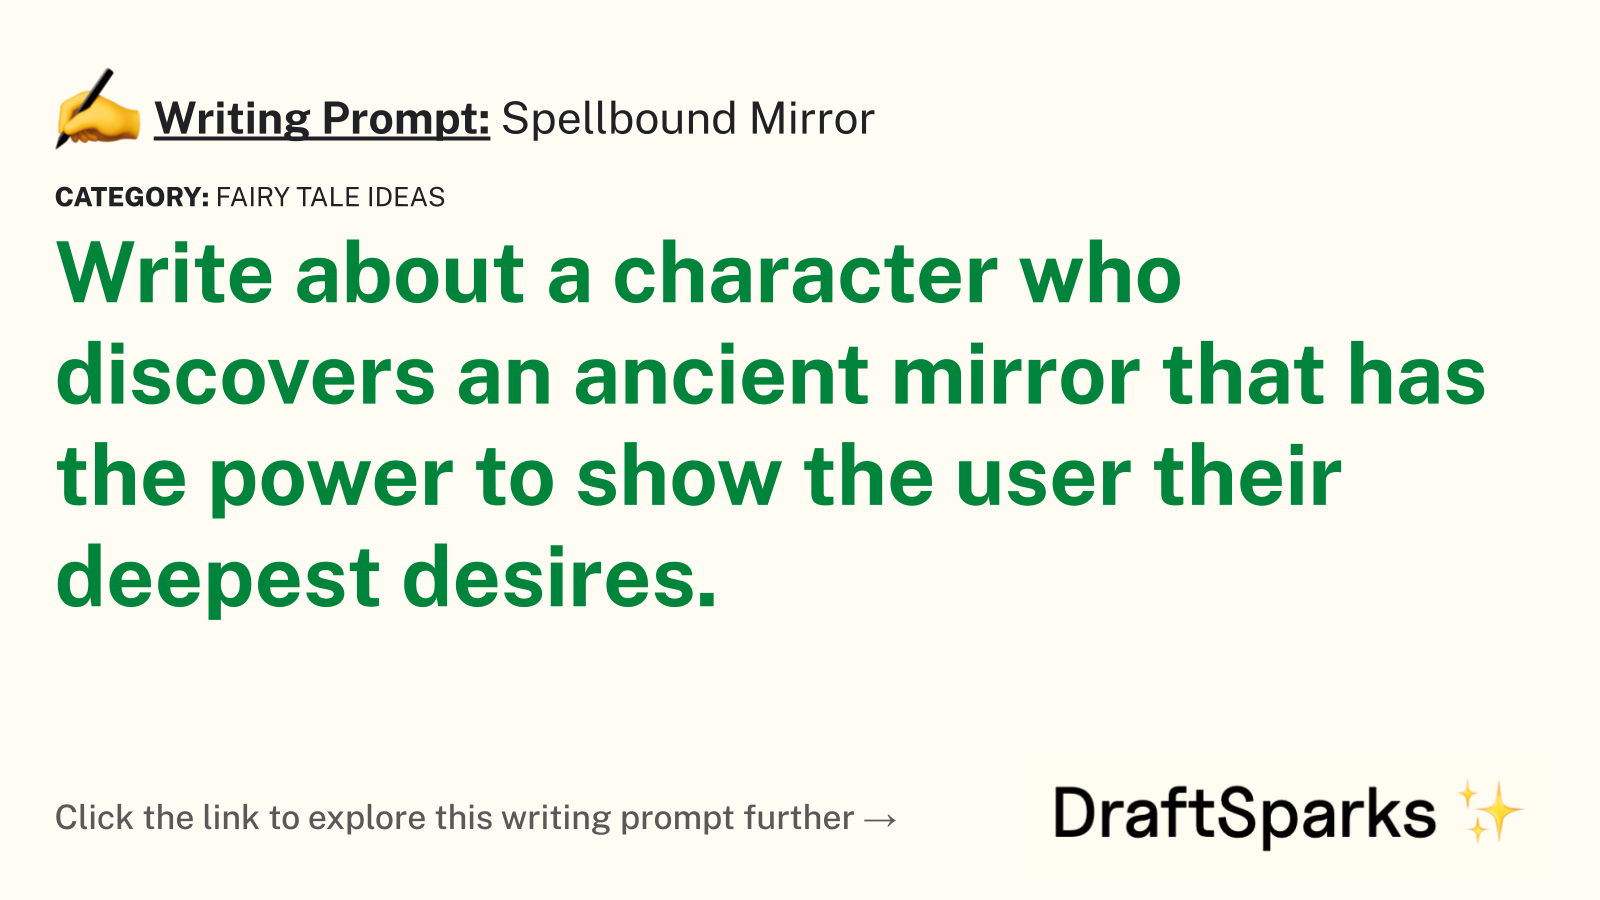 Spellbound Mirror